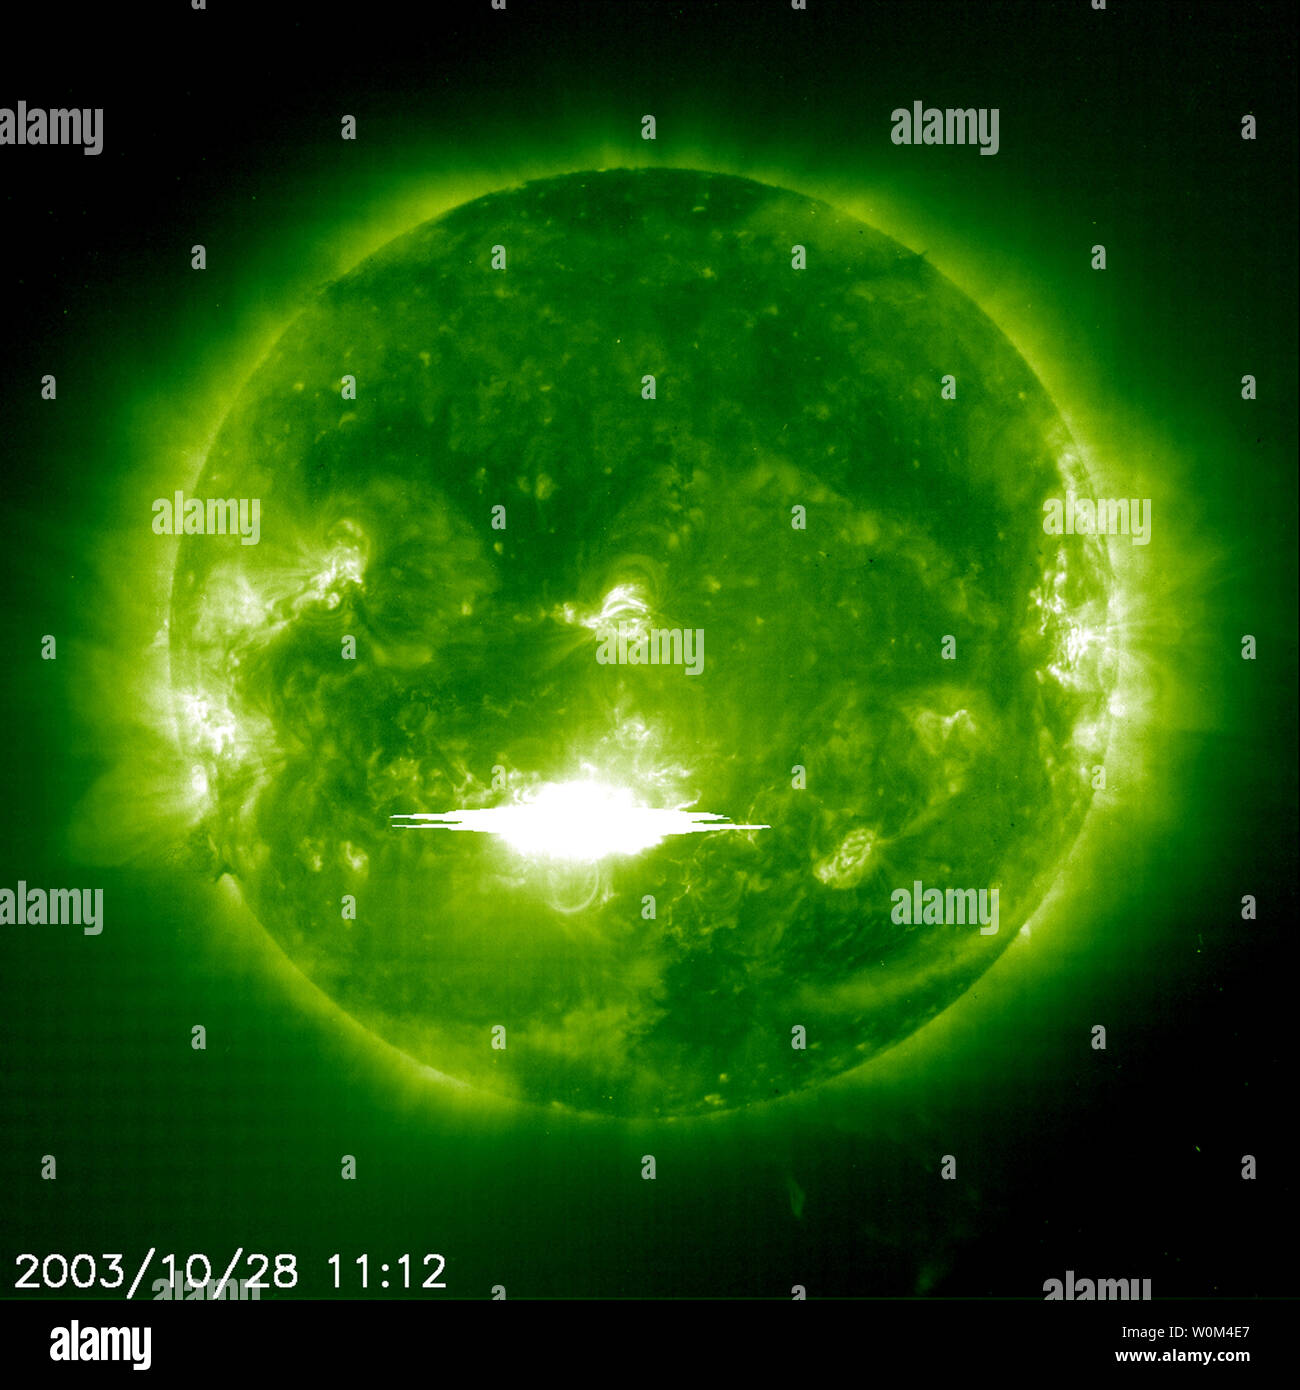 SOHO extreme ultraviolet Imaging Telescope catturato questo spettacolare solar flare la mattina di ottobre 28, 2003. SOHO (solare e heliospheric observatory) è azionato dalla NASA ed ESA. La X 17.2 flare, la seconda più grande osservata da Soho, era l'impostazione off una forte di protoni di alta energia evento e un rapido movimento di massa coronale l'espulsione. La Terra è stata immediatamente colpiti dalla intensa radiazione a raggi X, che ionizza gli strati superiori del atmospher, causando gravi disagi per le comunicazioni radio. Le particelle ad alta energia che seguono (chiamato "proton storm") potrebbero interferire con i satelliti Foto Stock